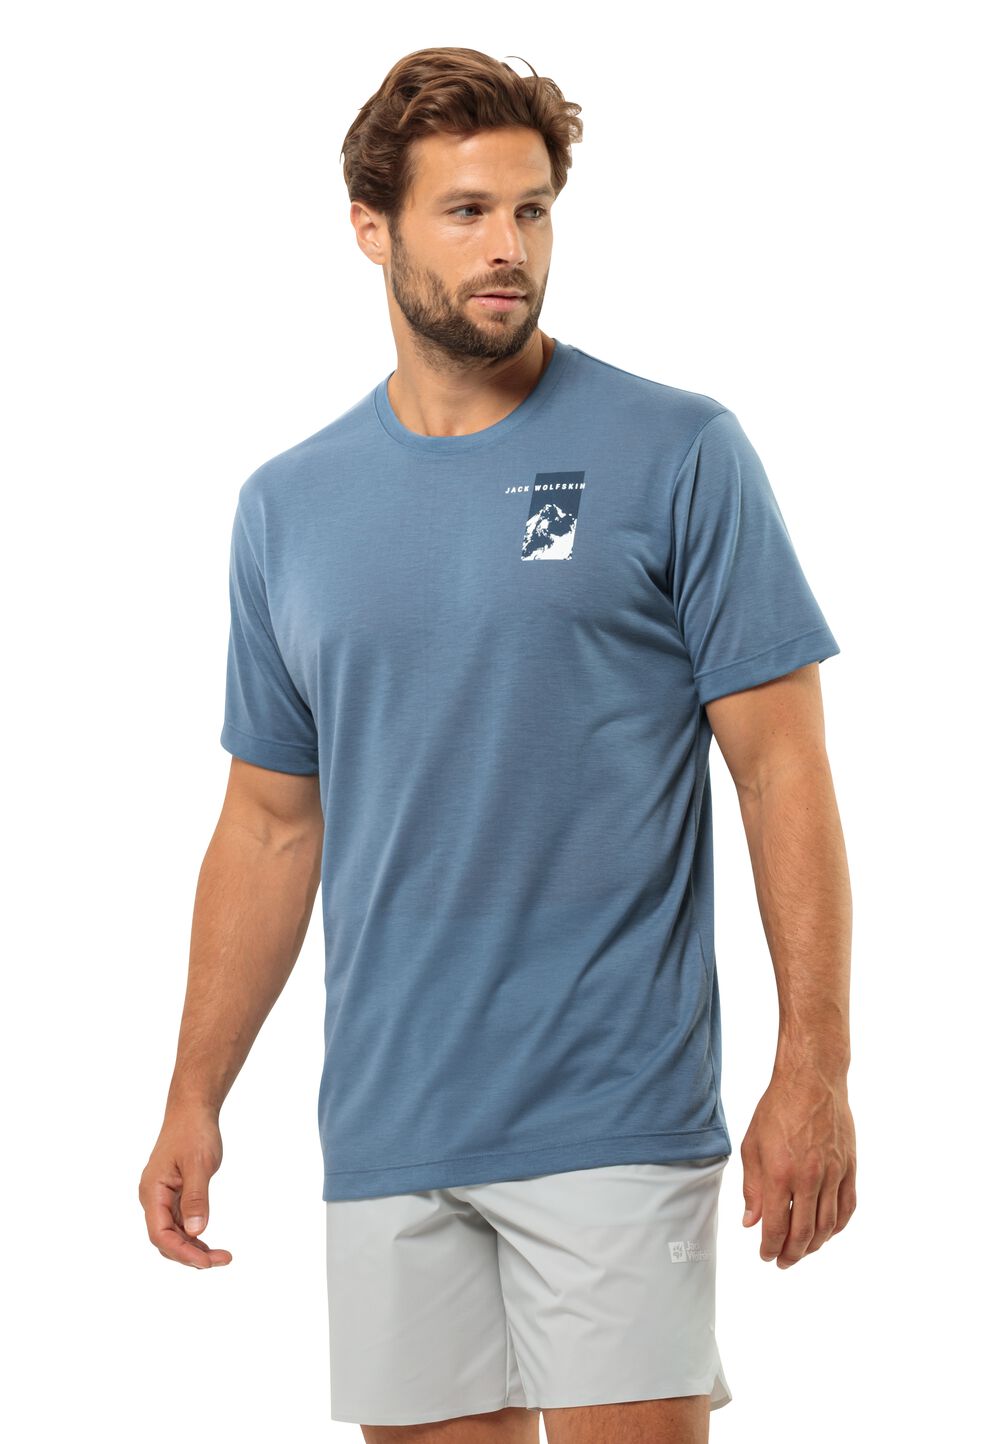 Jack Wolfskin Vonnan S S Graphic T-Shirt Men Functioneel shirt Heren XL elemental blue elemental blue